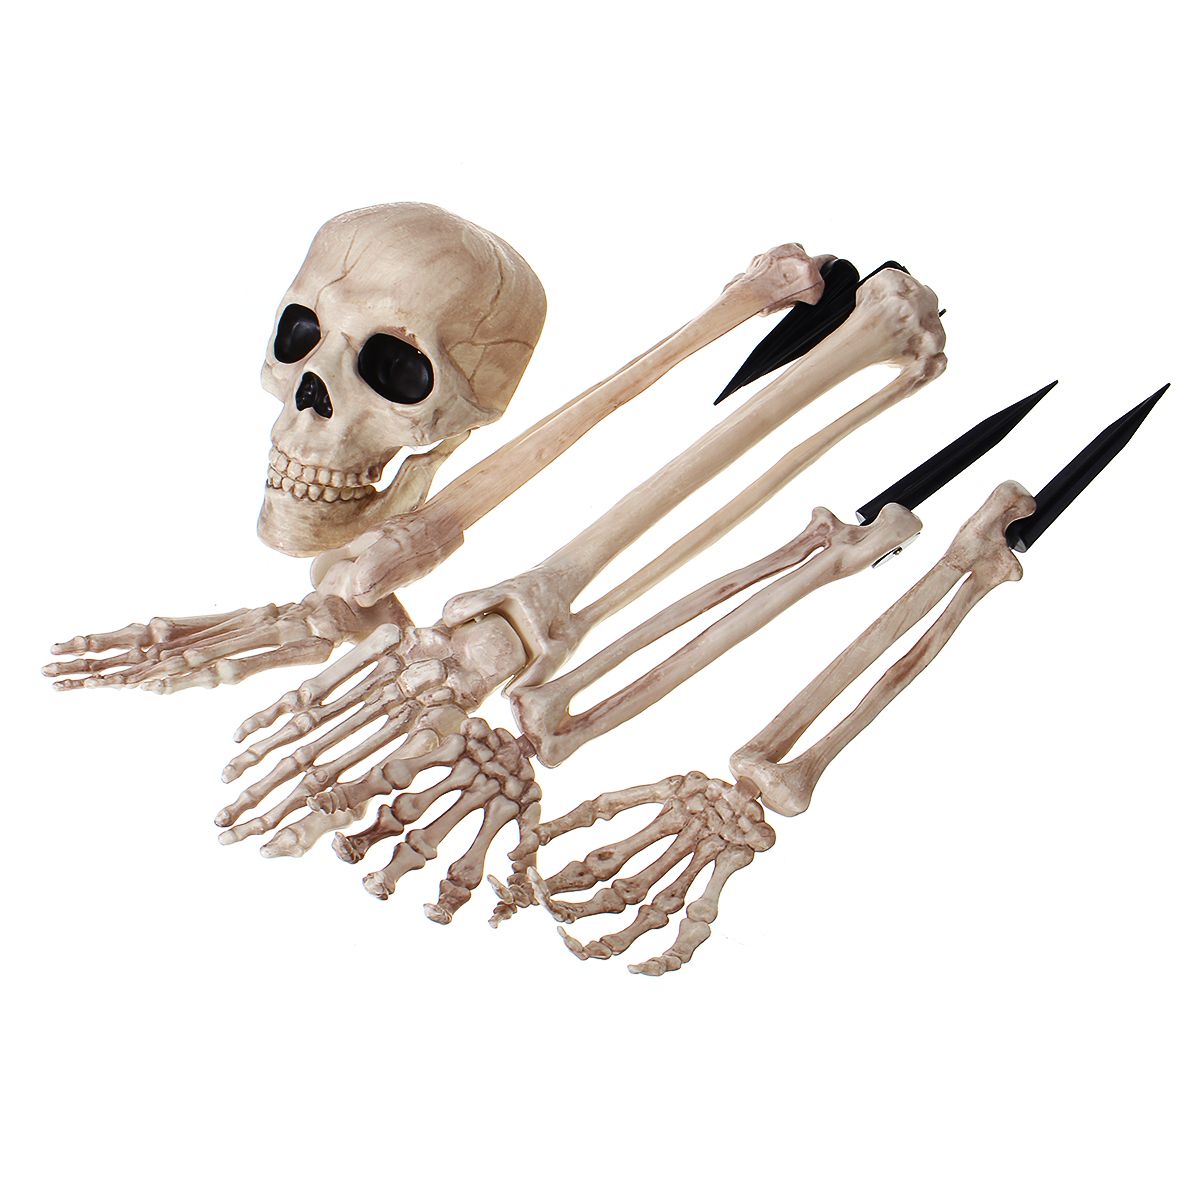 Halloween-Scary-Horror-Skeleton-Decorations-Head-Bones-Skull-Hand-Outdoor-Prop-Party-1583891